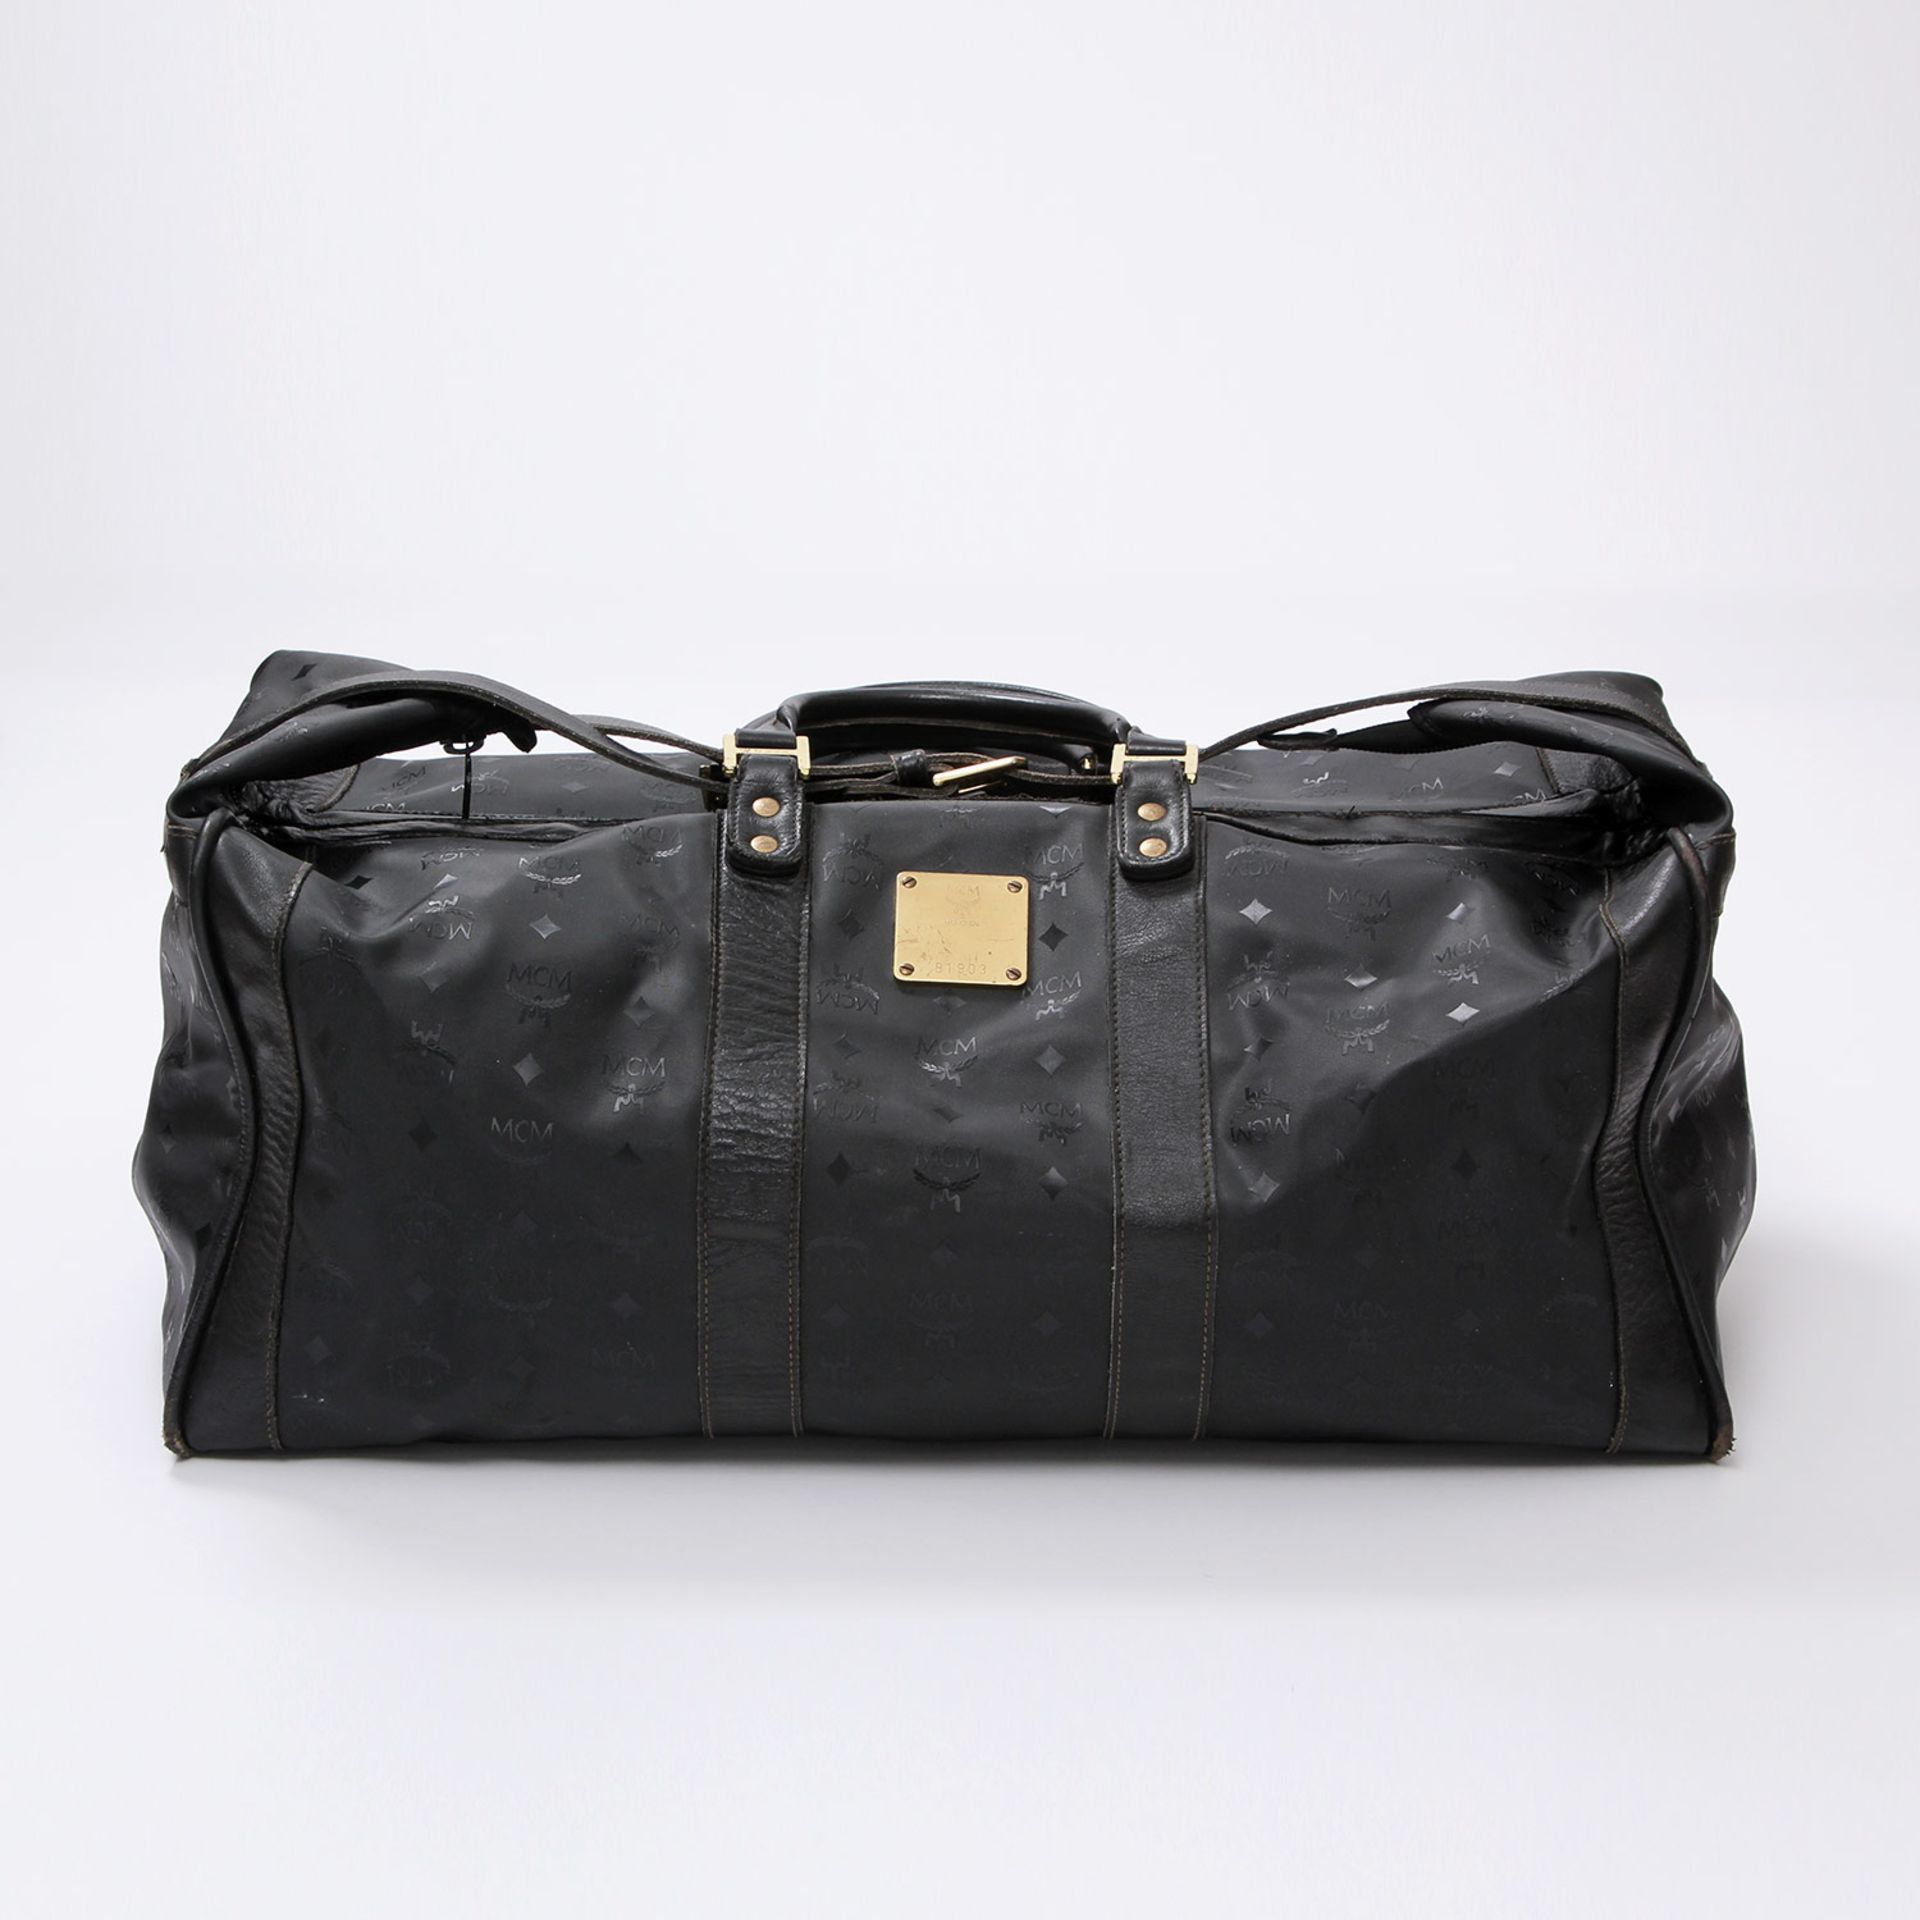 MCM VINTAGE praktische Reißetasche. Maße ca.: L 58cm x H 23cm x B 32cm. Schwarzes Synthetik mit Logo